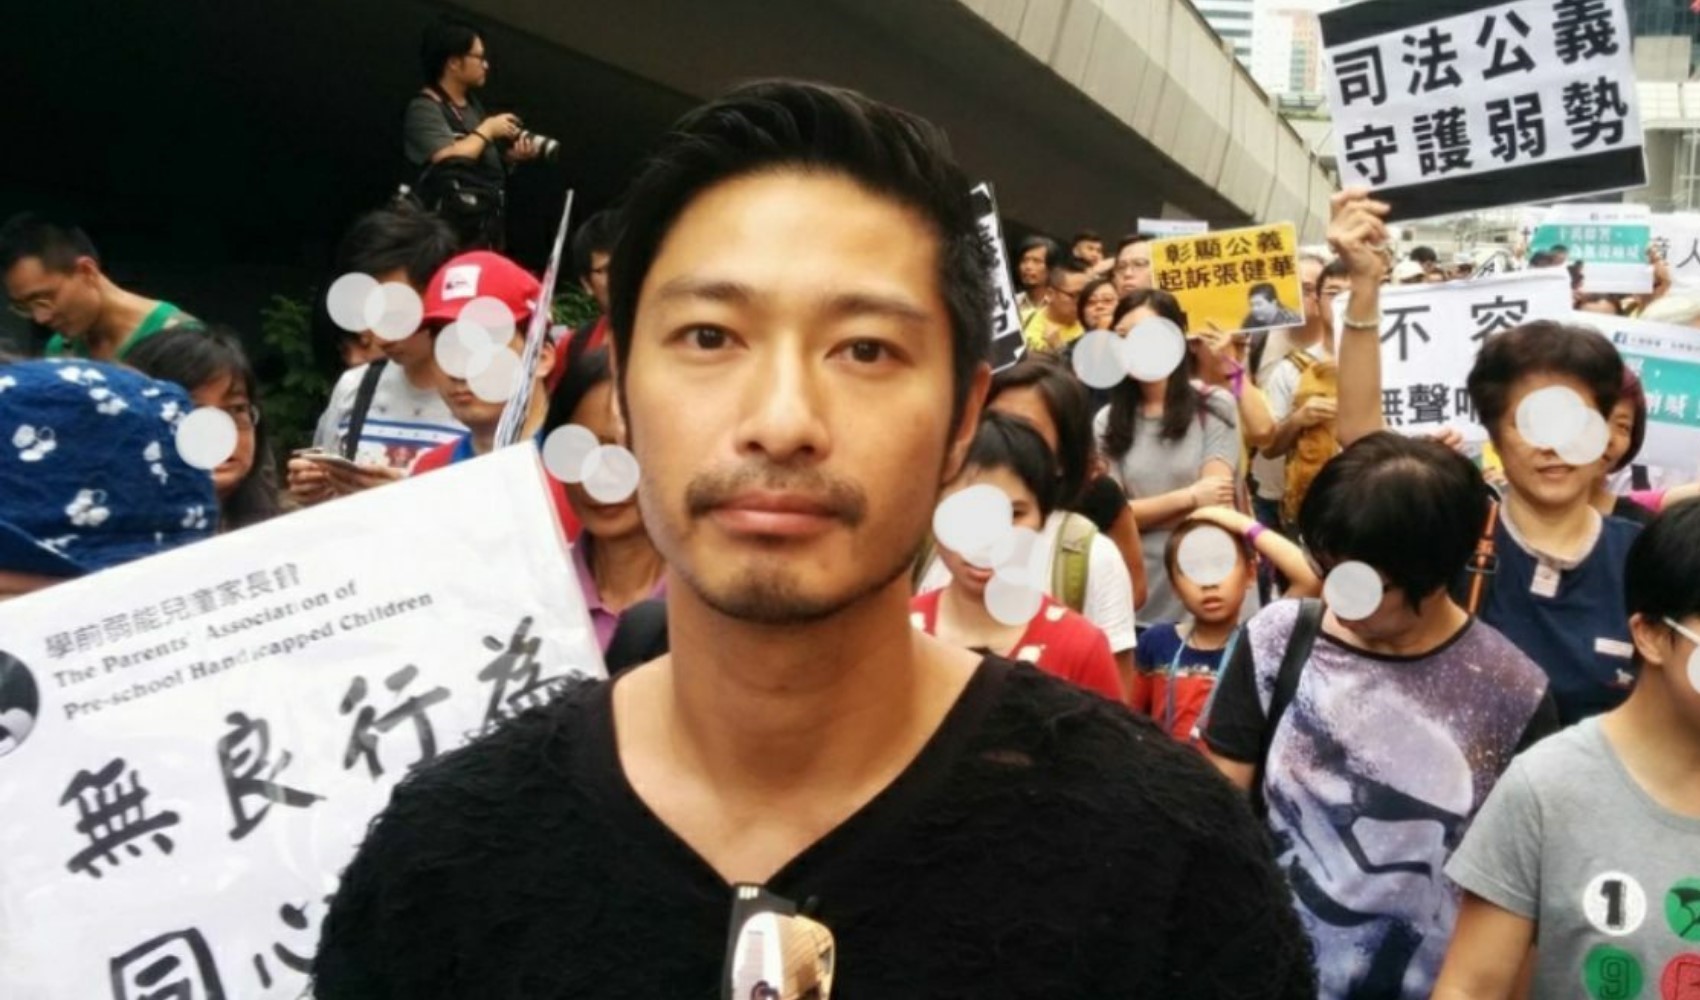 Hong Konglu oyuncu Gregory Wong’a hapis cezası